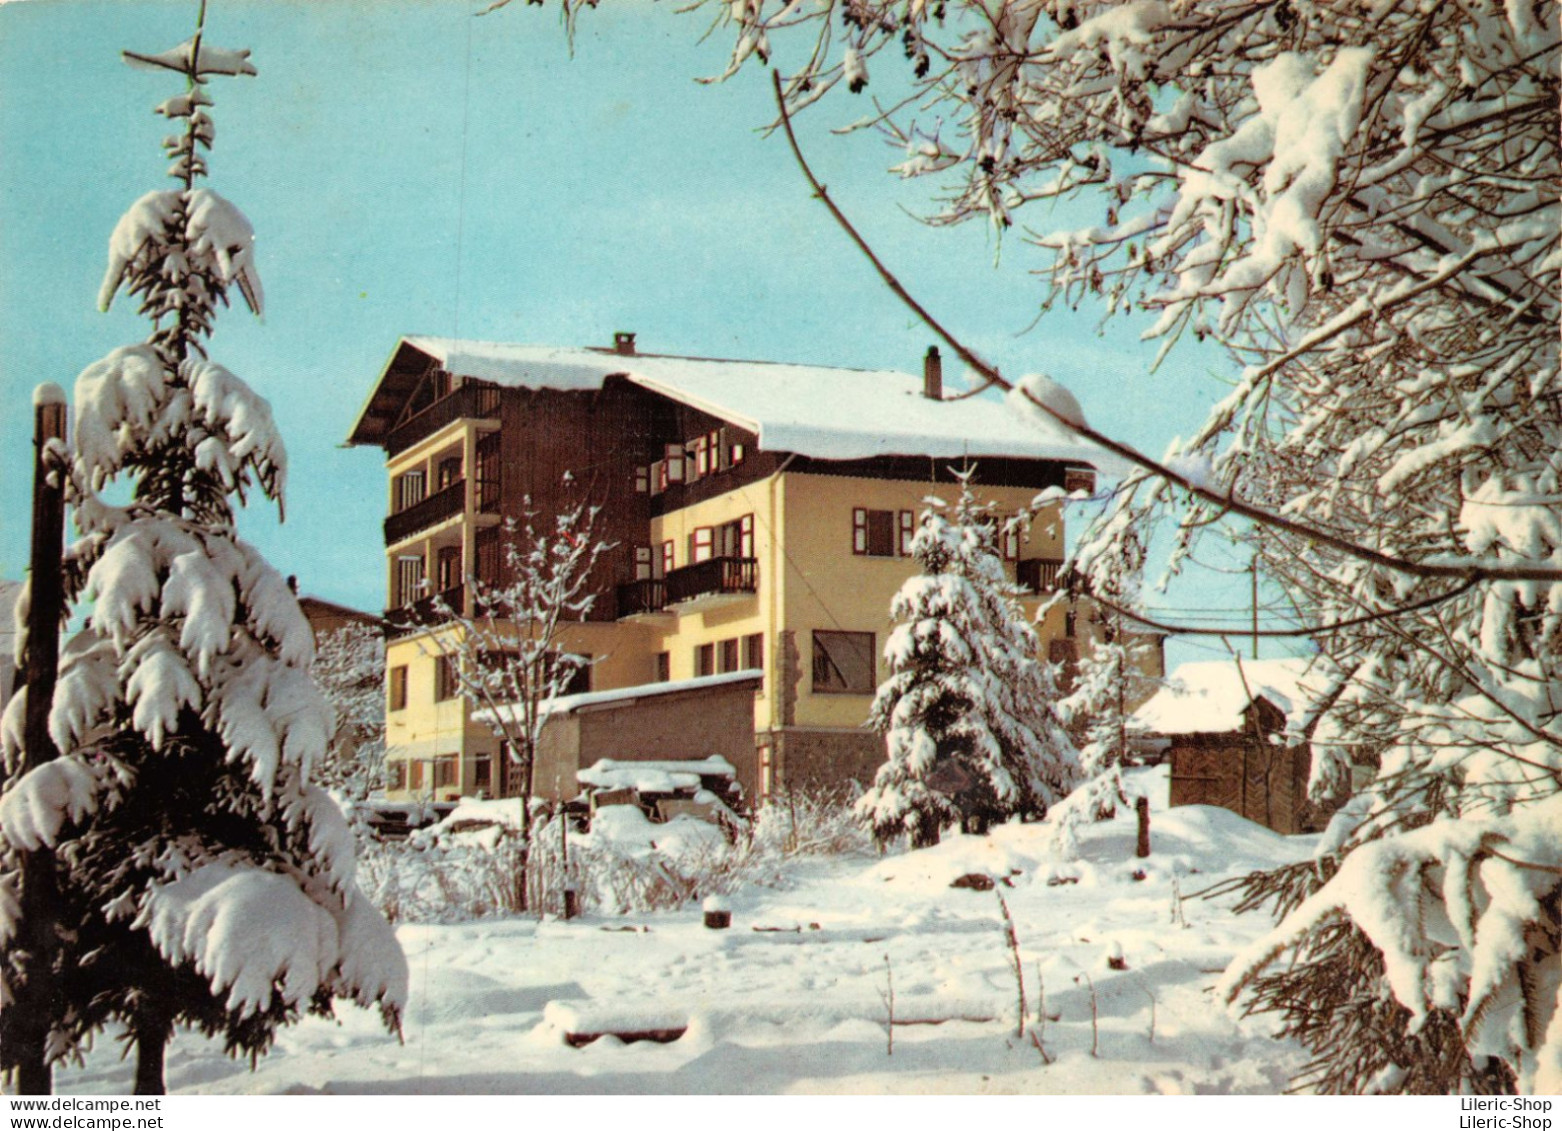 HOTEL CHALET DES FLEURS ** NN. 74120 MEGEVE (Haute-Savoie) - Megève